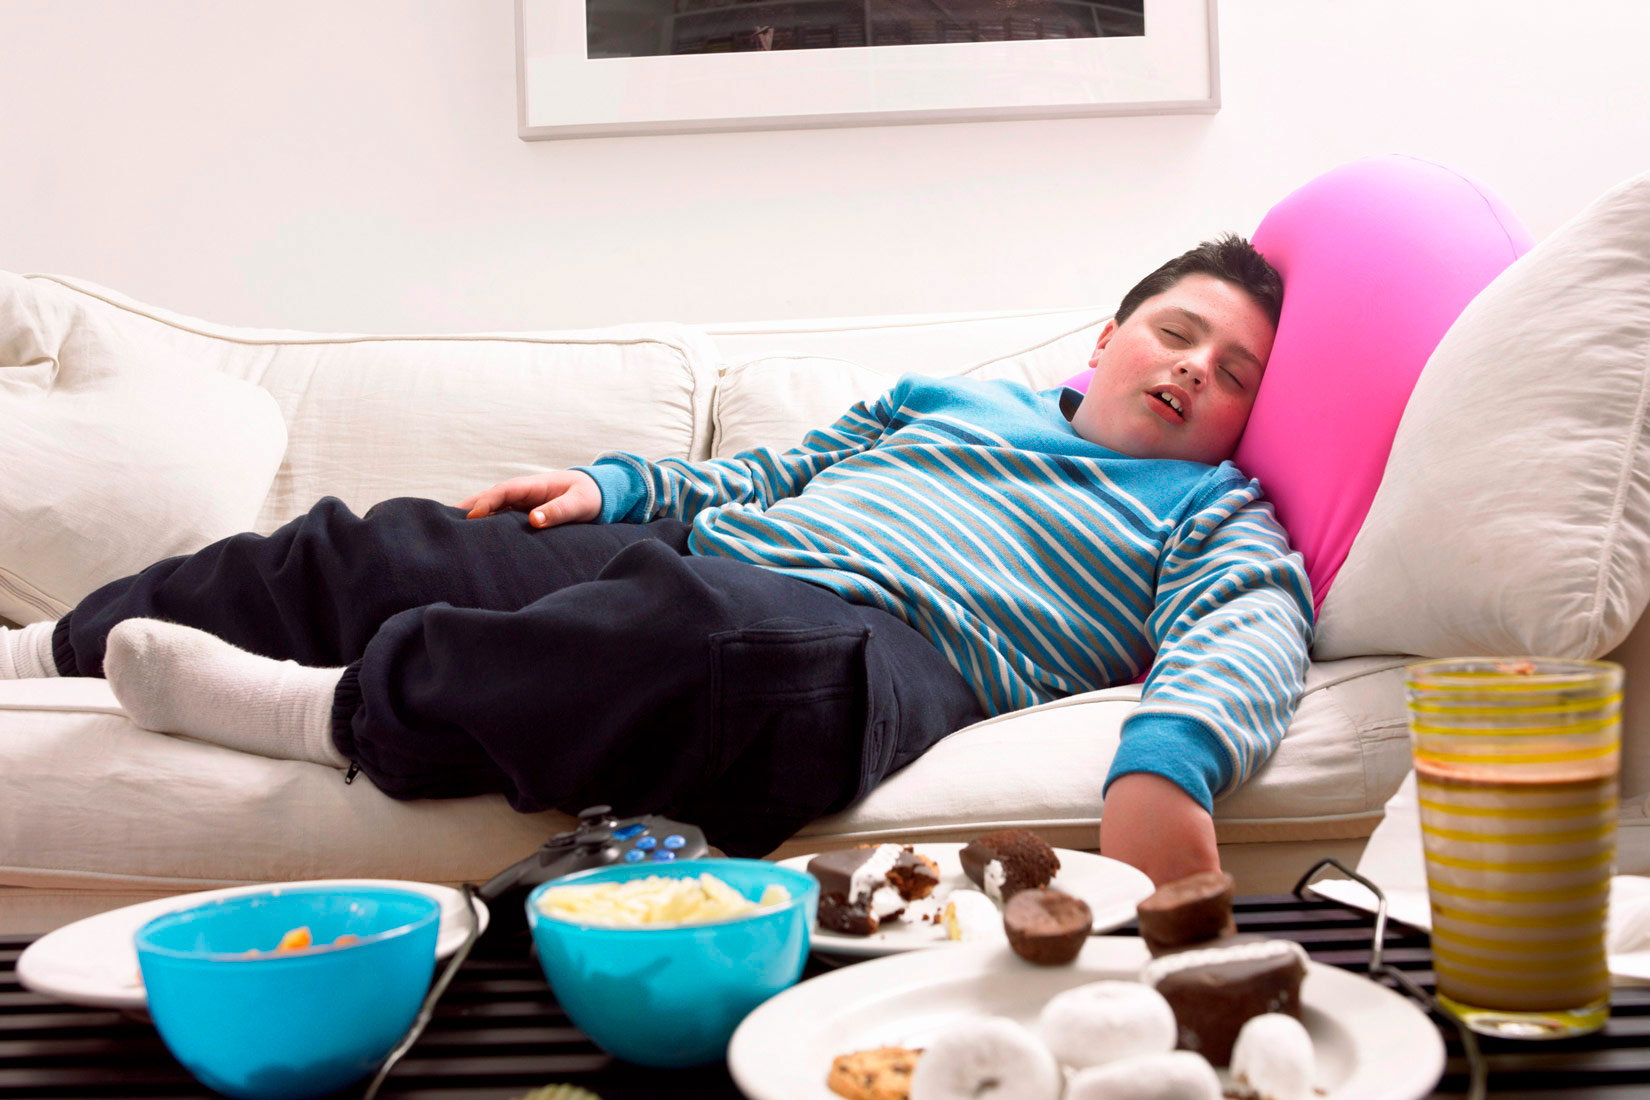 Prikazana je fotografija pretilog dječaka kako spava na trosjedu u dnevnom boravku, a ispred njega su nezdrave grickalice: čips, kolači i neki napitak u čaši.